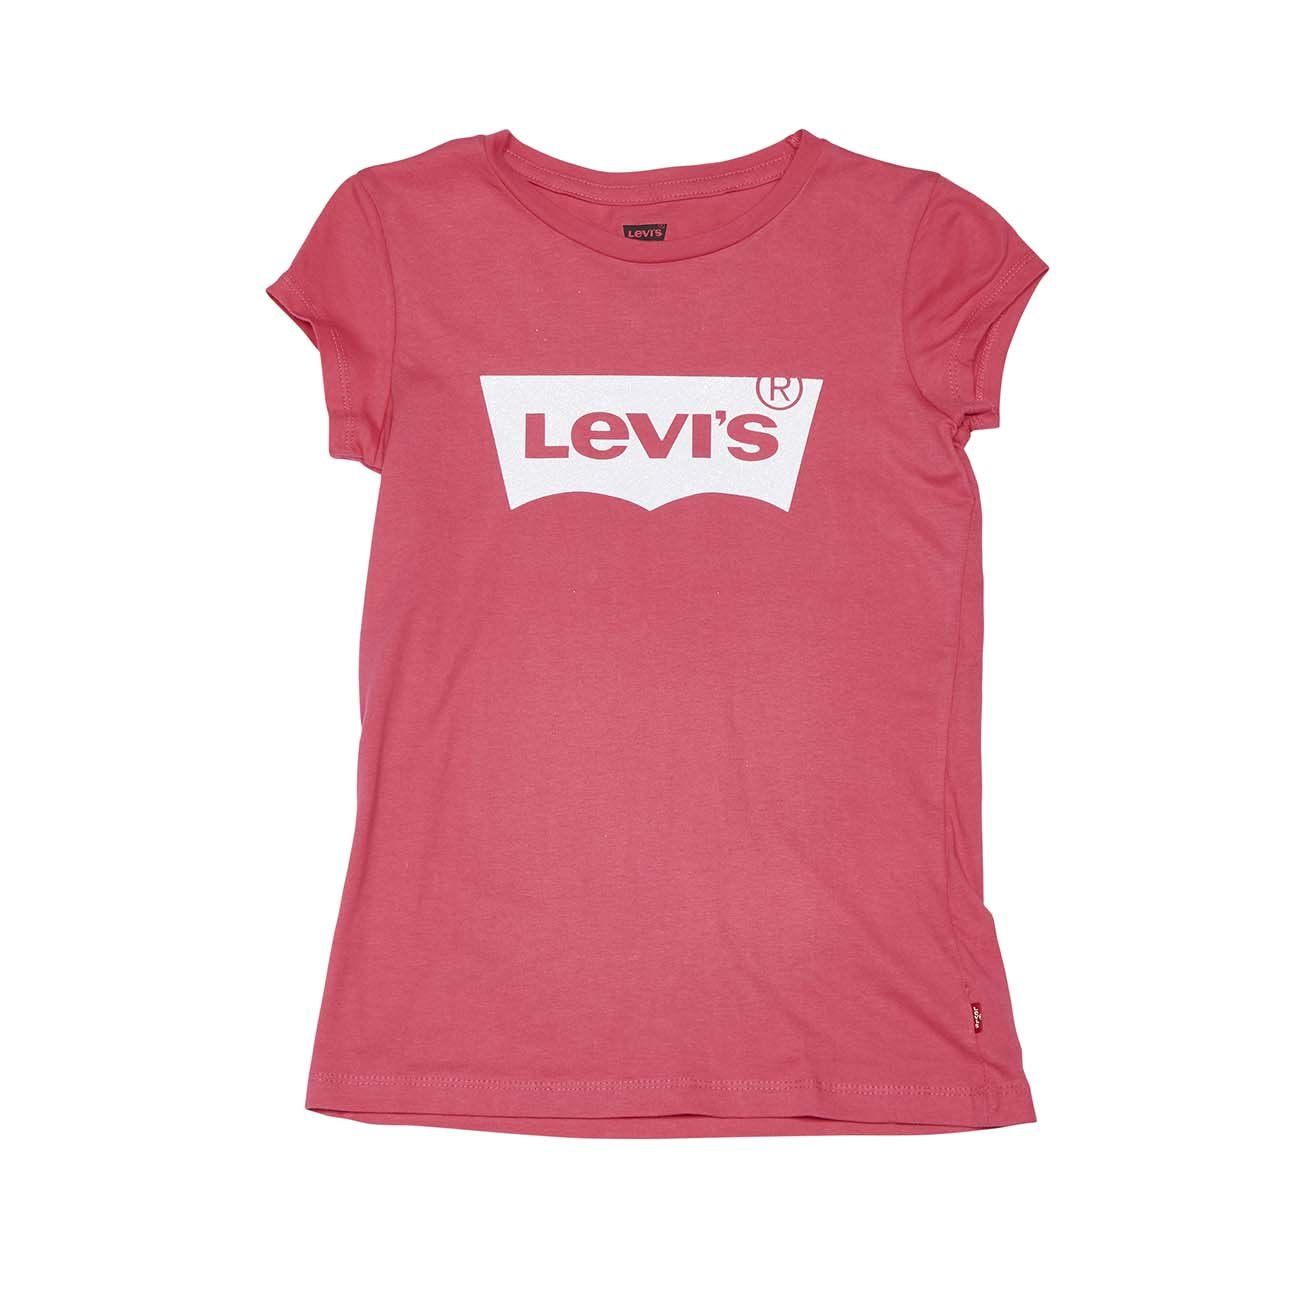 pink levis t shirt